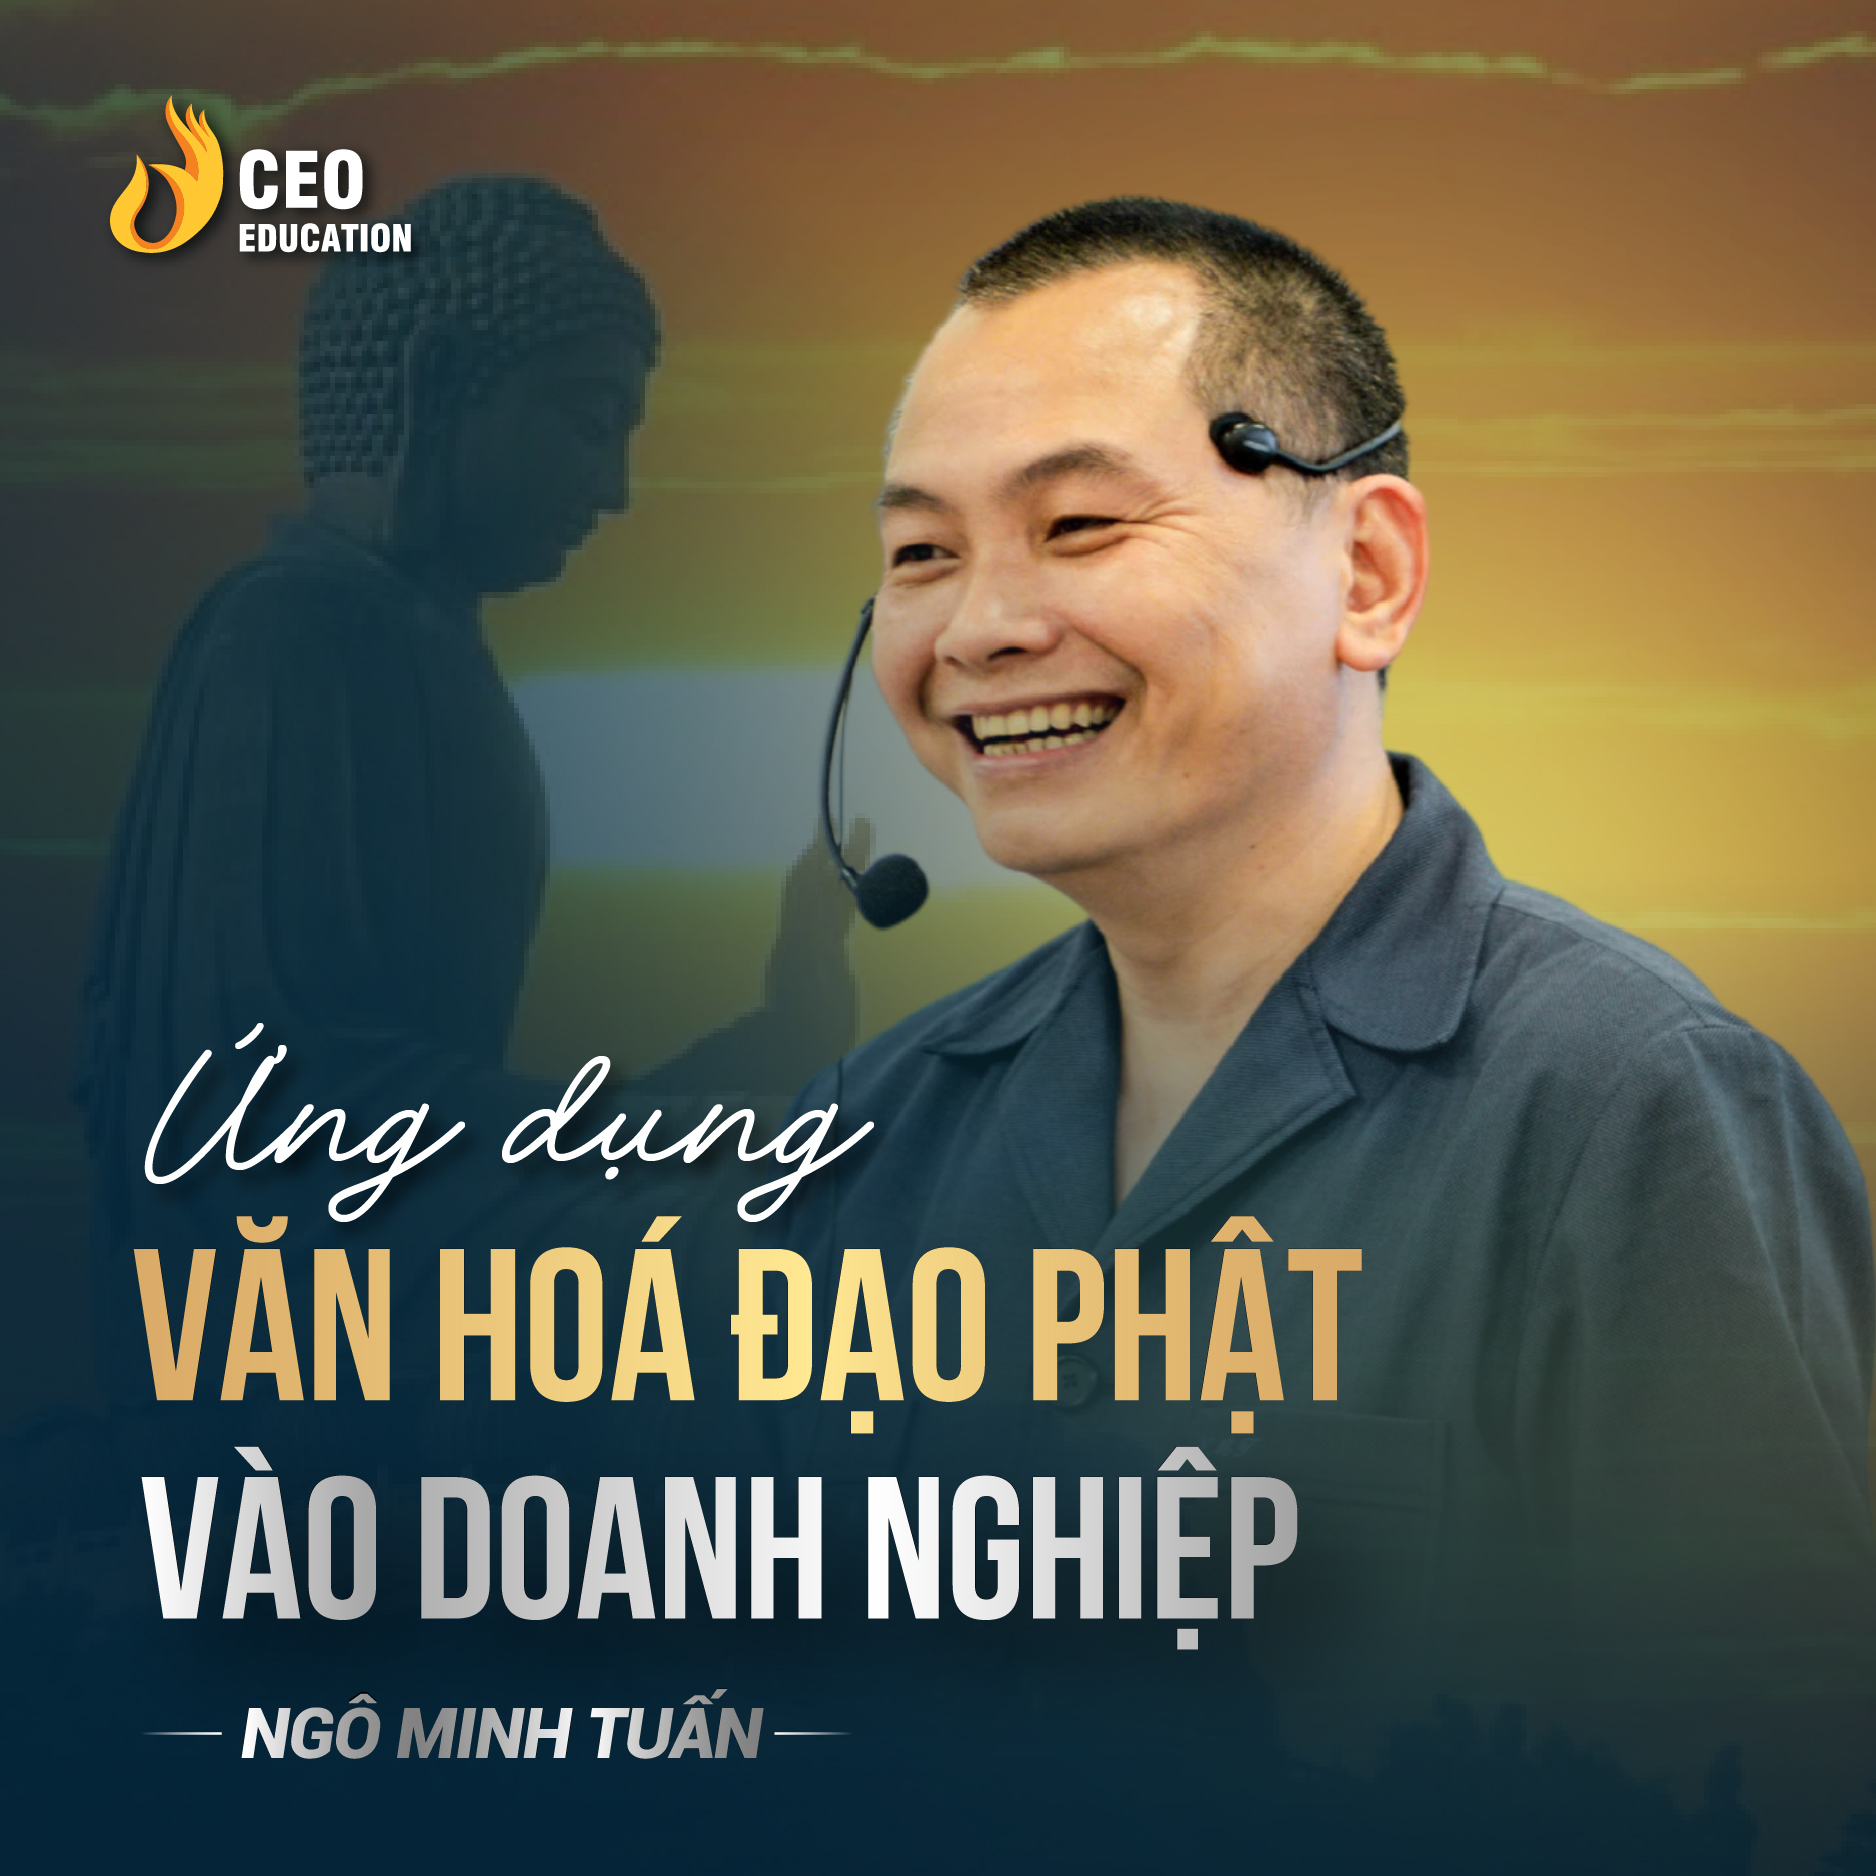 Ứng dụng đạo phật vào doanh nghiệp| Ngô Minh Tuấn | Học Viện CEO Việt Nam